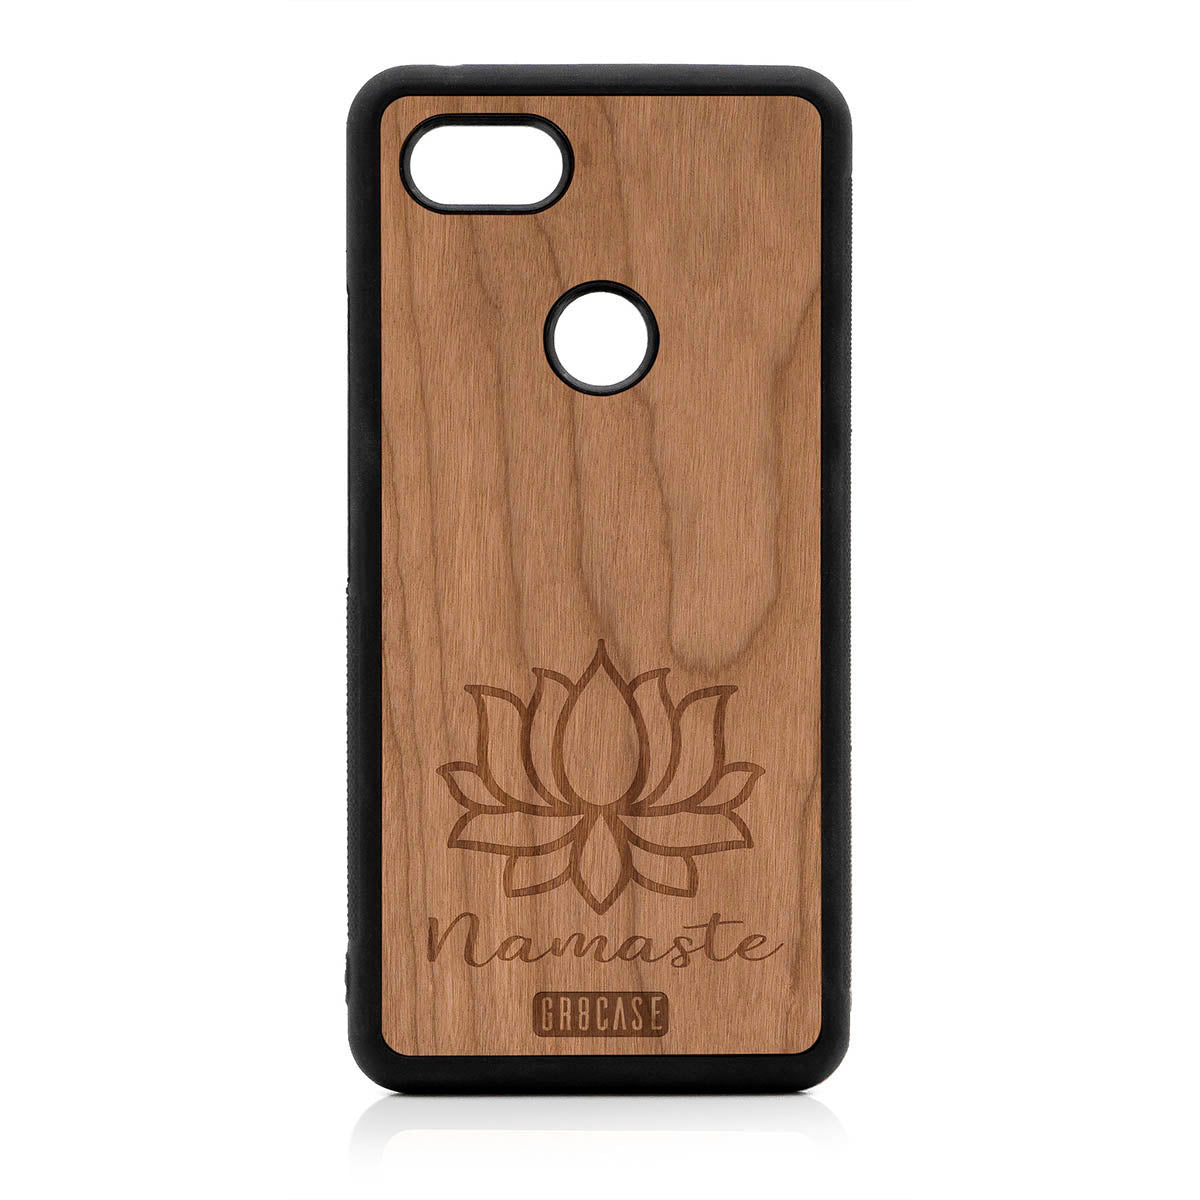 Namaste (Lotus Flower) Design Wood Case For Google Pixel 3 XL